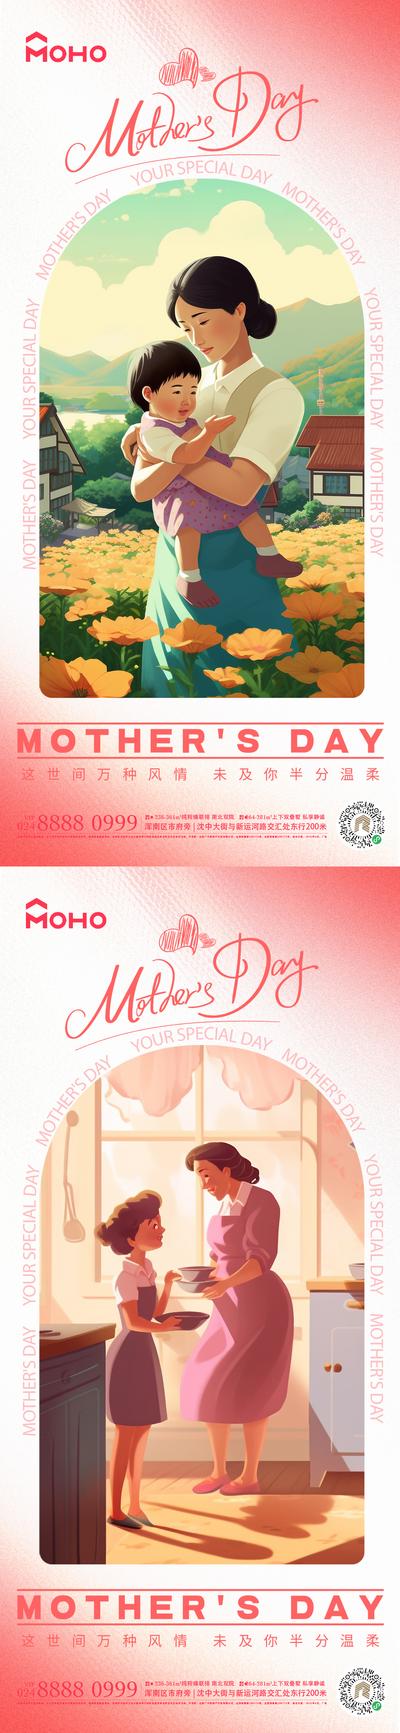 南门网 广告 海报 节日 母亲节 母亲 母女 母子 爱 母爱 感恩 拥抱 呵护 陪伴 鲜花 送花 系列